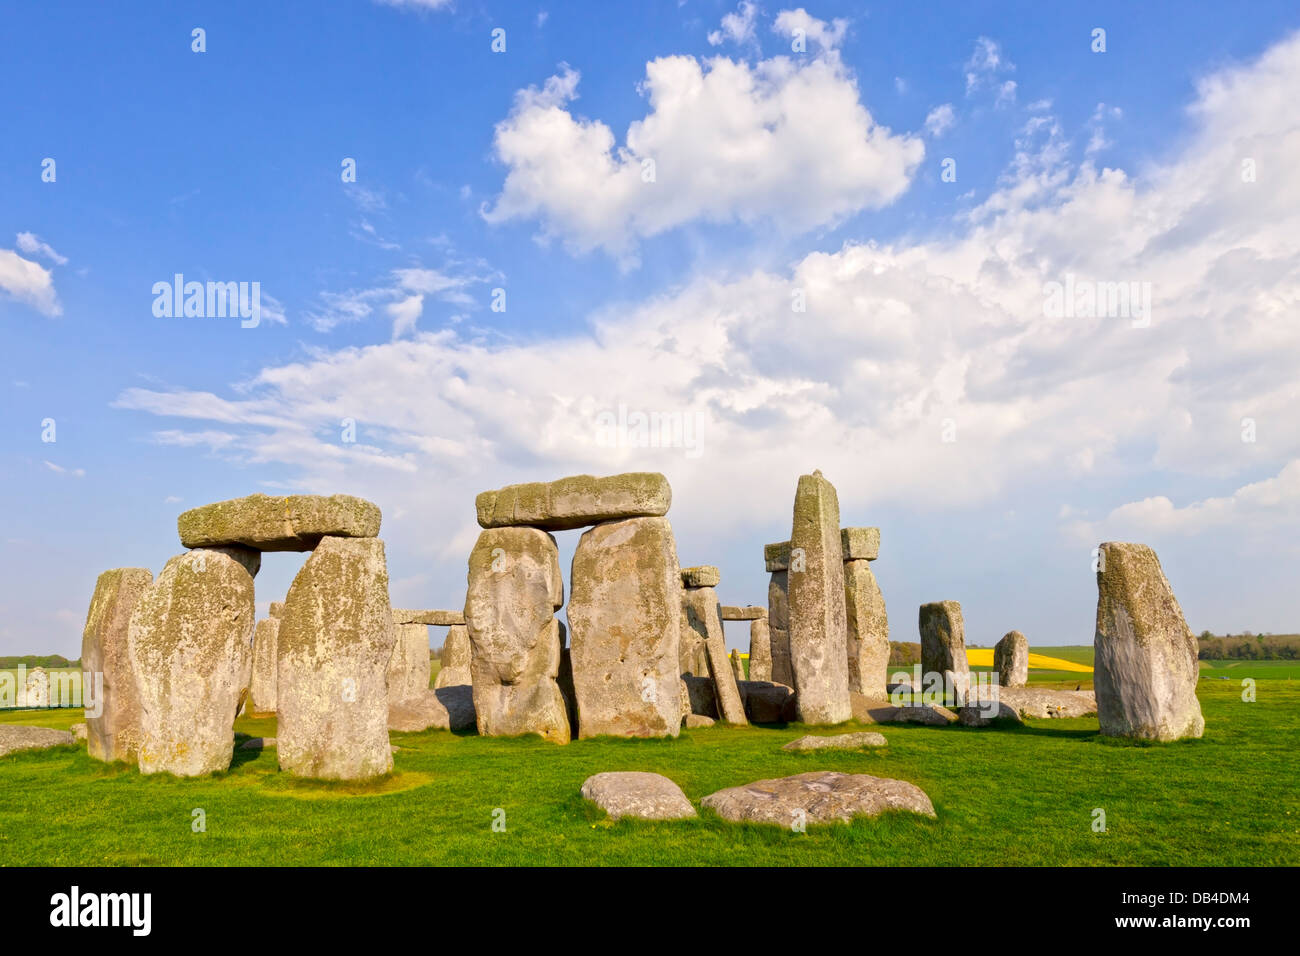 Le cercle de pierres de Stonehenge, Wiltshire, Angleterre - le célèbre monument mégalithique de Stonehenge Wiltshire dans... Banque D'Images